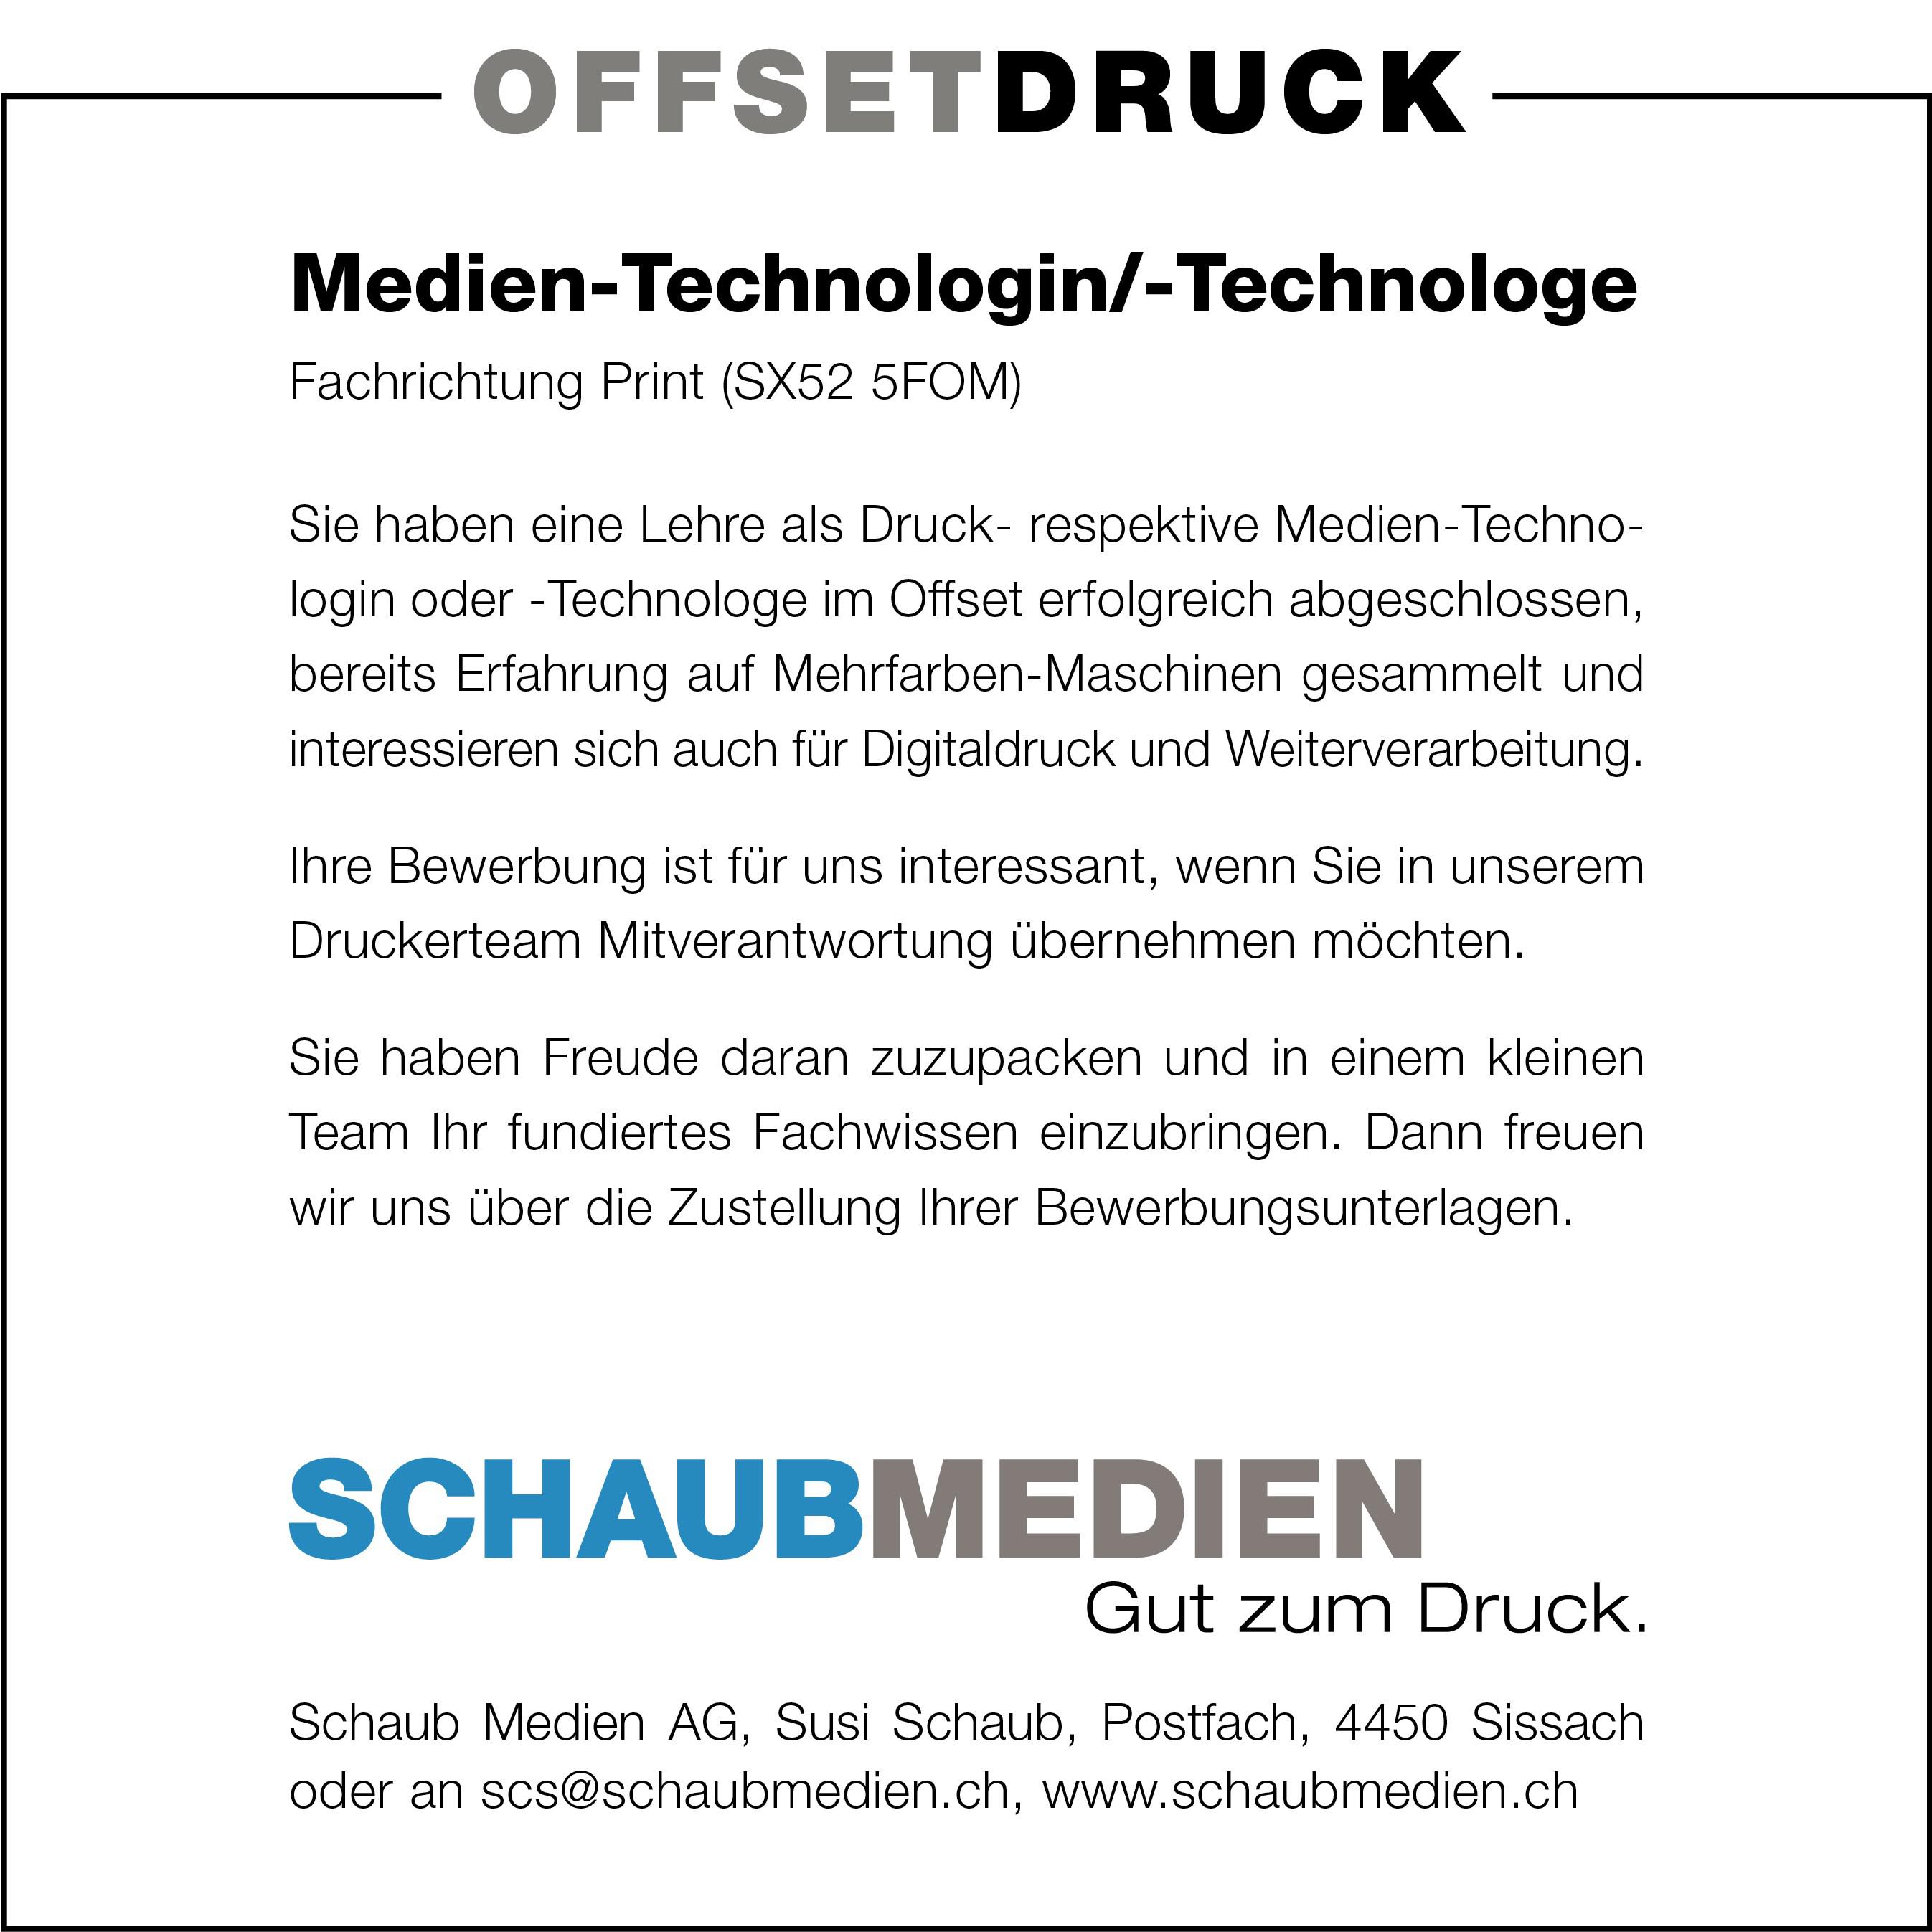 Medien-Technologin/-Technologe Fachrichtung Print (SX52 5FOM), Schaub Medien AG, Sissach, gesucht